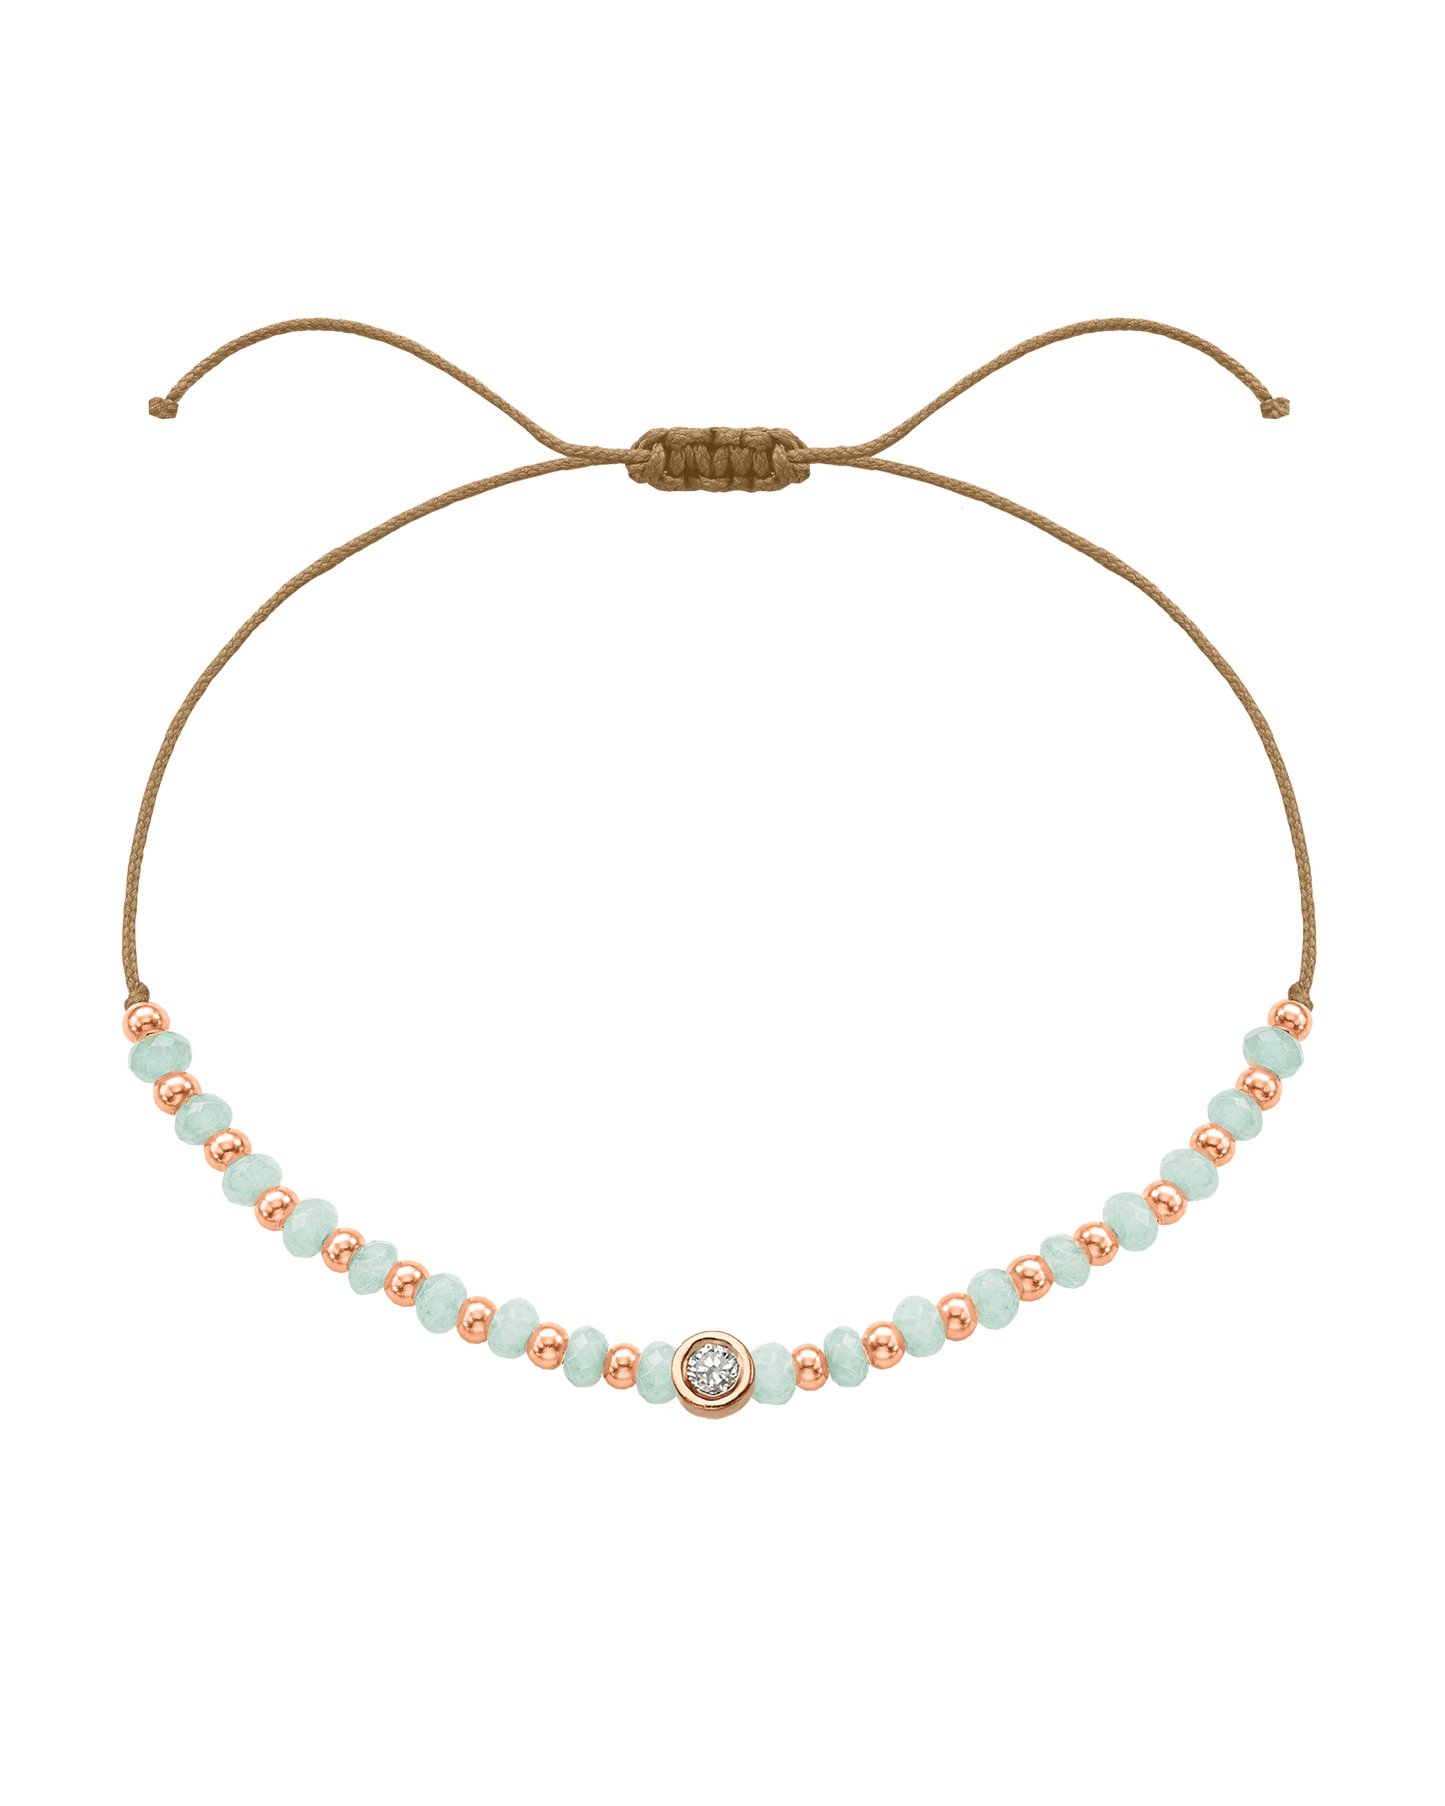 Apatite Gemstone String of Love Bracelet for Inspiration - 14K Rose Gold Bracelets 14K Solid Gold Camel Medium: 0.04ct 